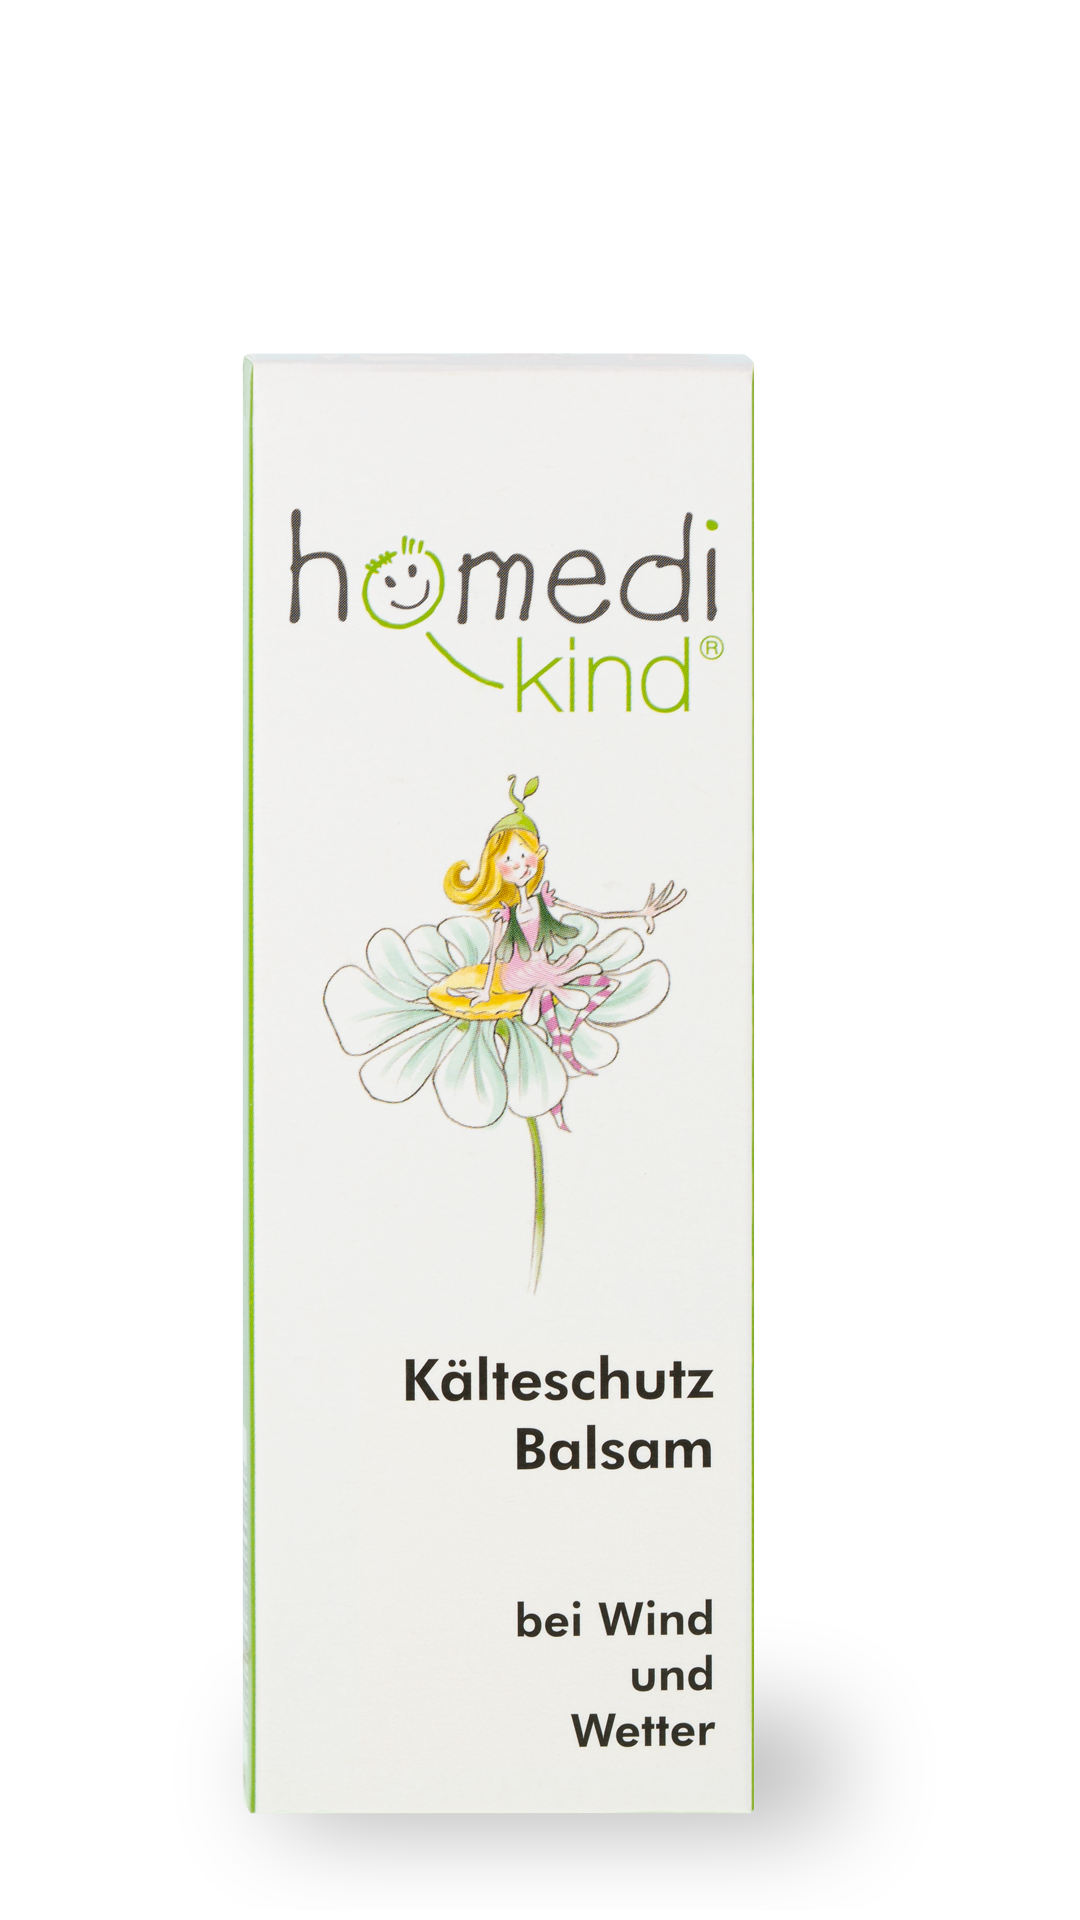 homedi-kind® Kälteschutz Balsam